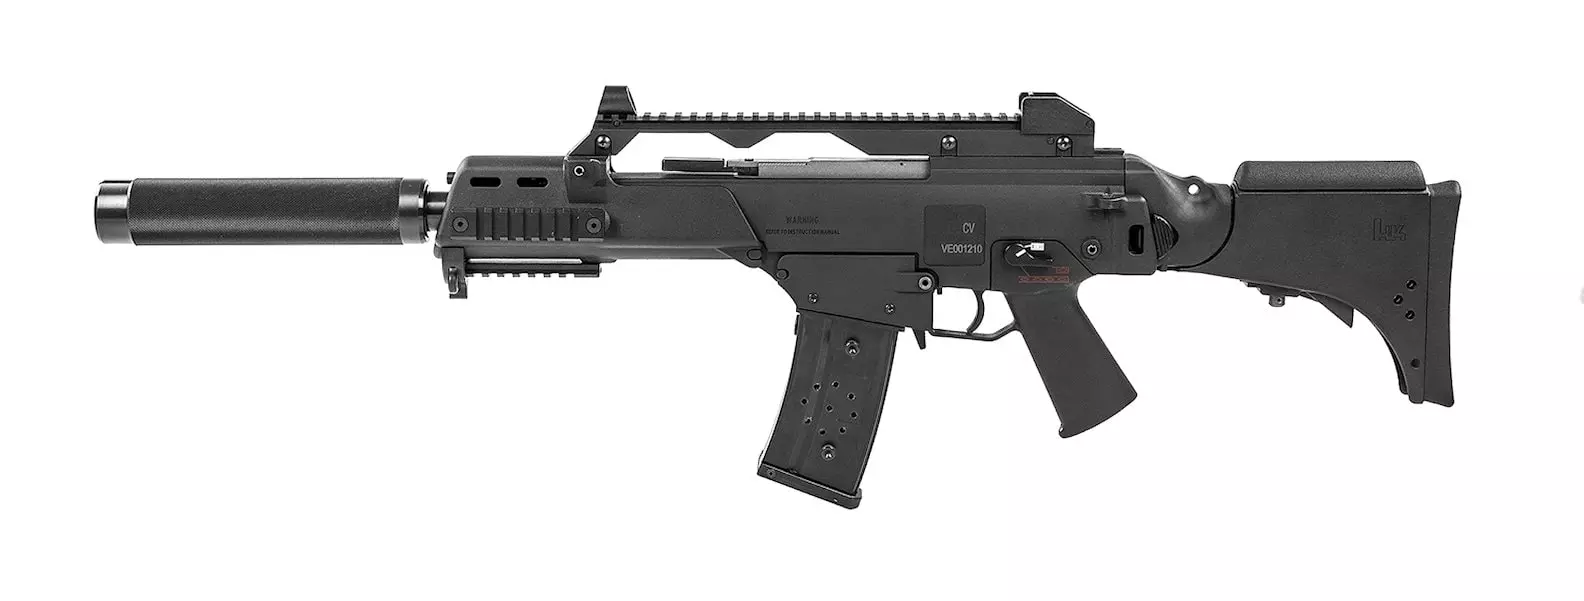 G36 laser tag gun 